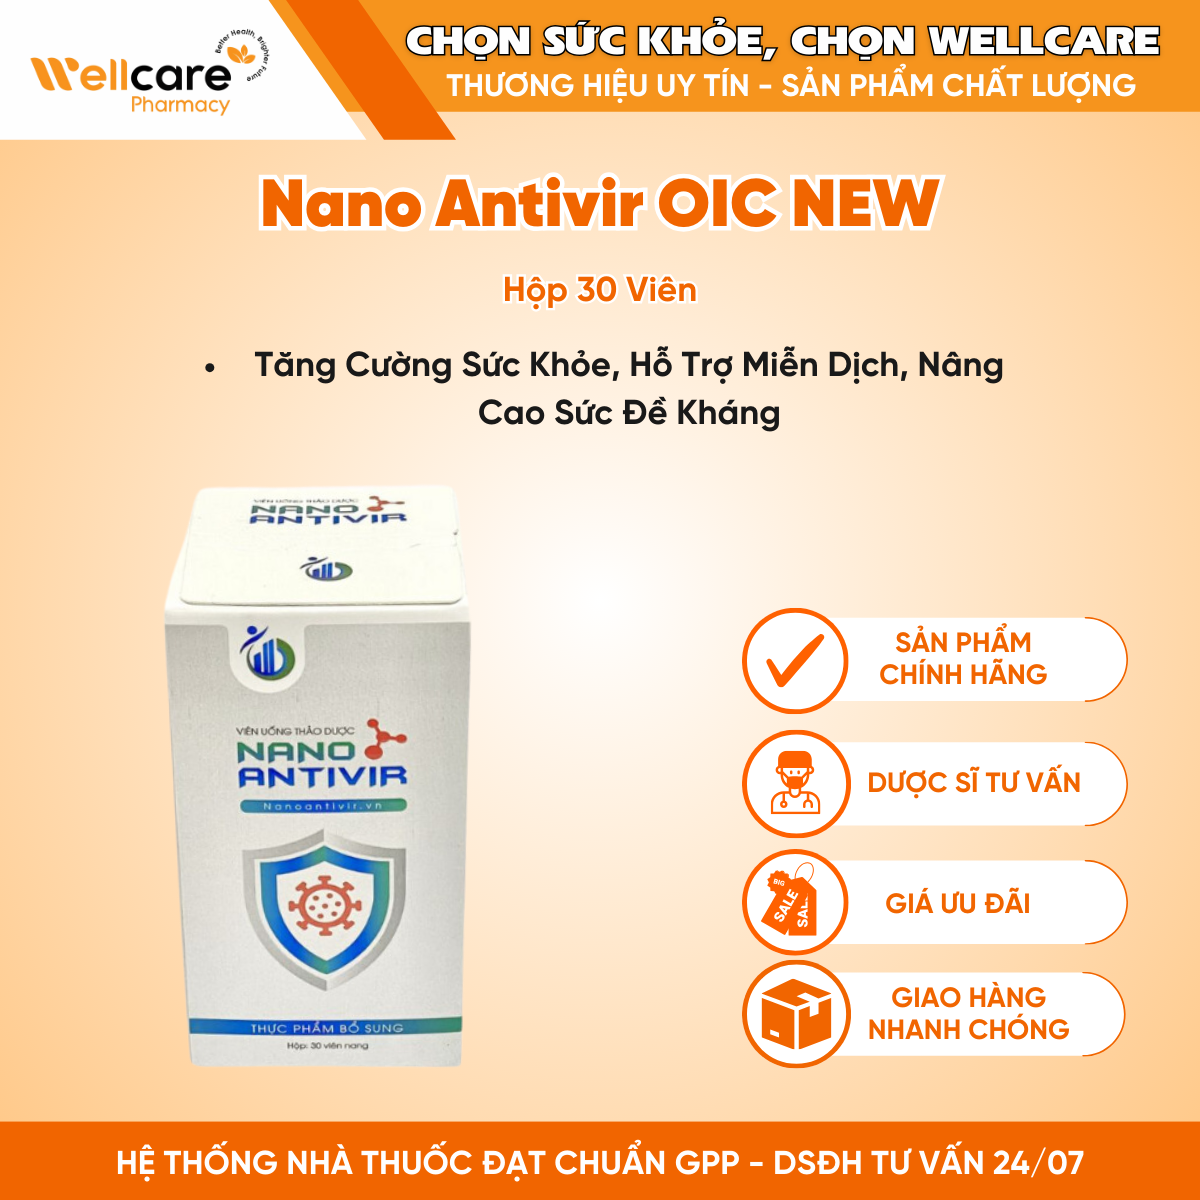 Nano Antivir OIC NEW – Tăng cường sức khỏe, hỗ trợ miễn dịch, nâng cao sức đề kháng (Hộp 30 viên)